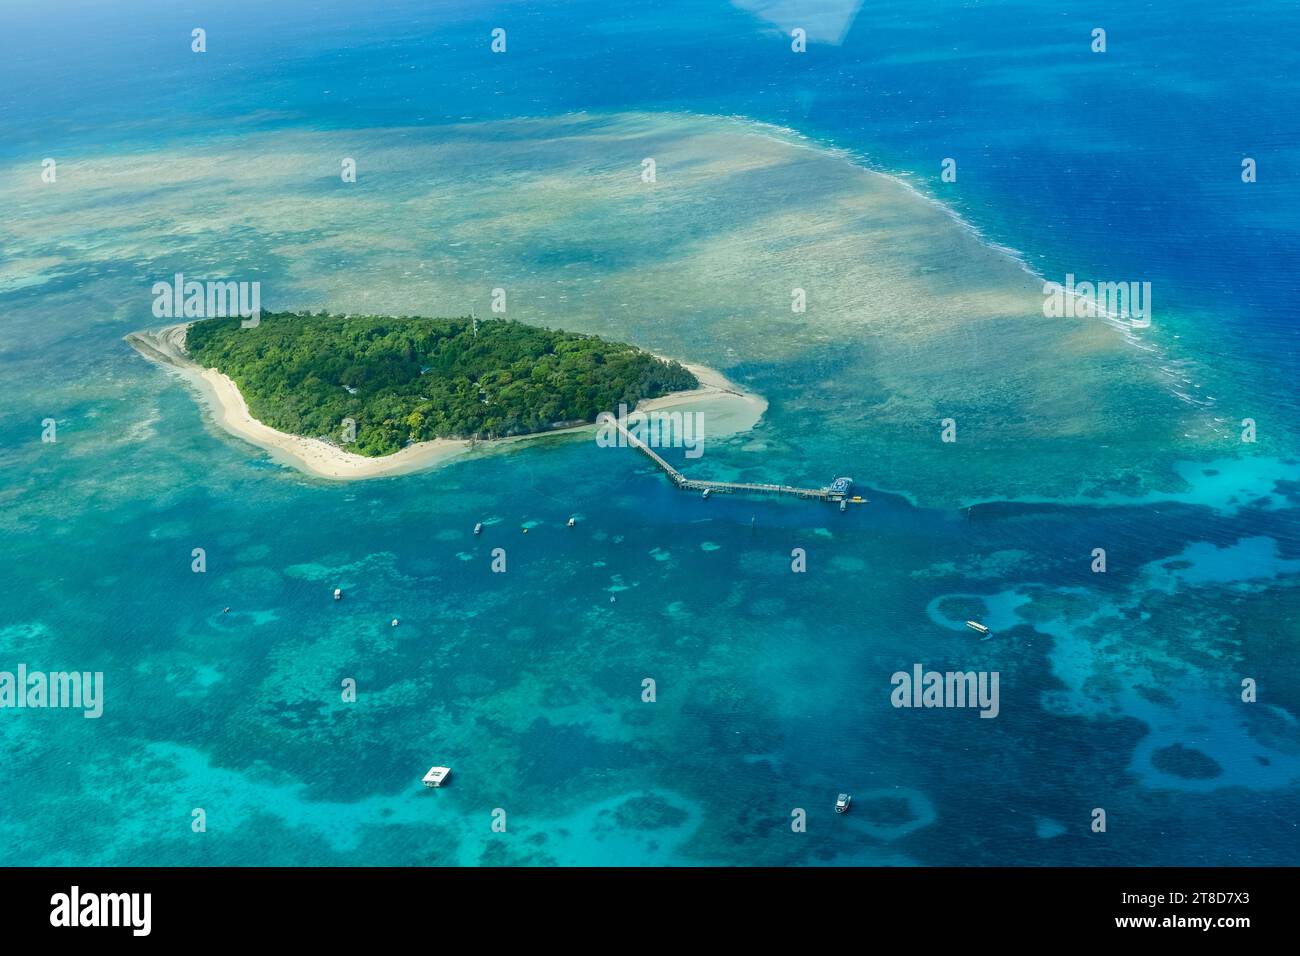 Una vista aerea delle barriere coralline e delle limpide acque turchesi che circondano Green Island, una piccola isola tropicale nella grande Barriera Corallina esterna Foto Stock